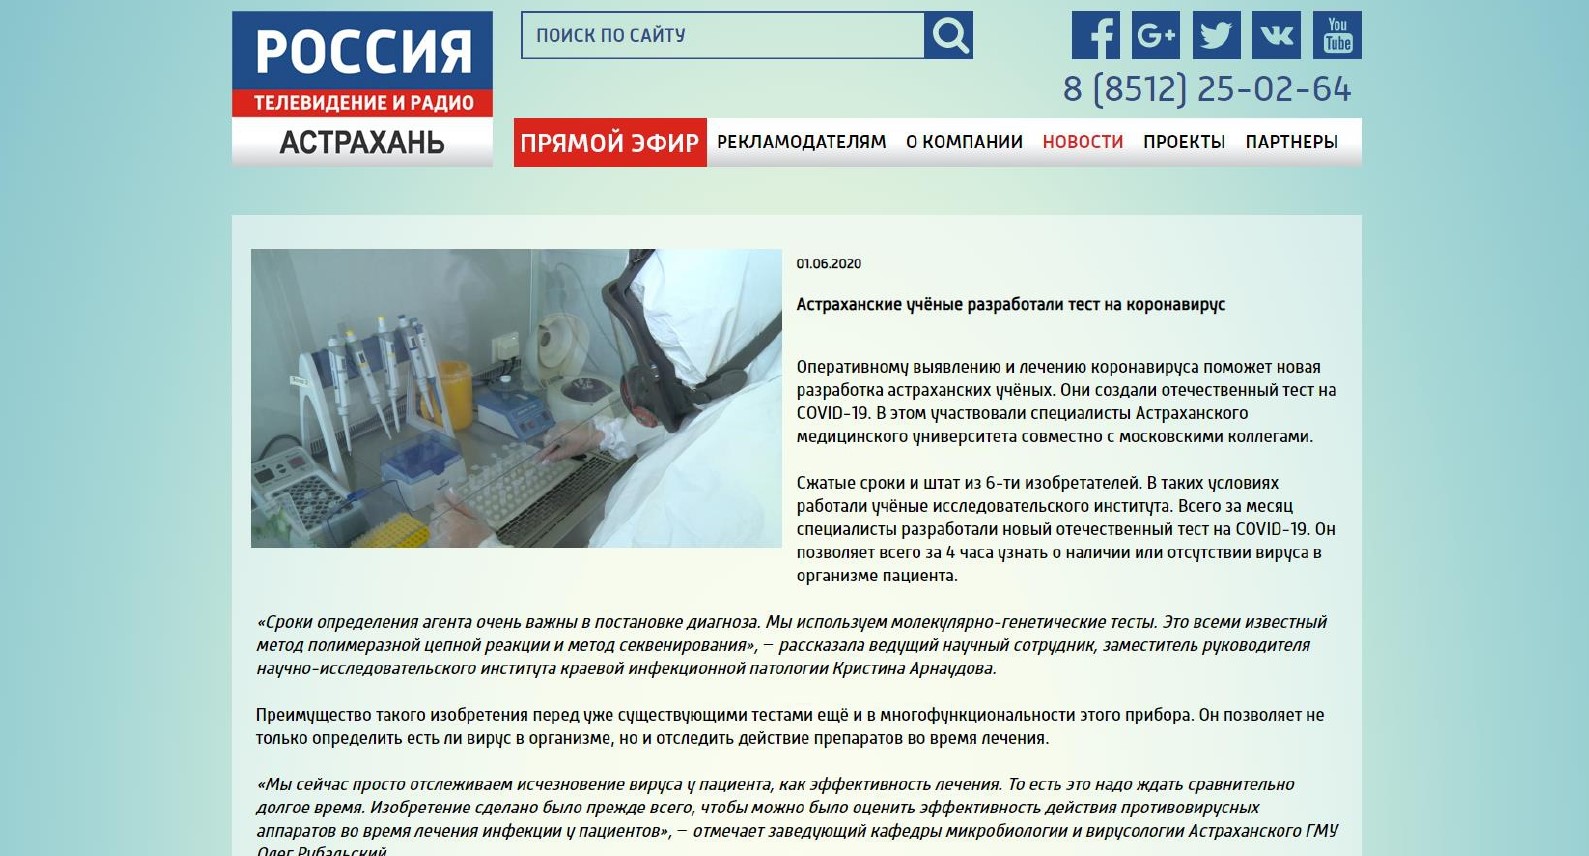 СМИ об университете: “Астраханские учёные разработали тест на коронавирус”